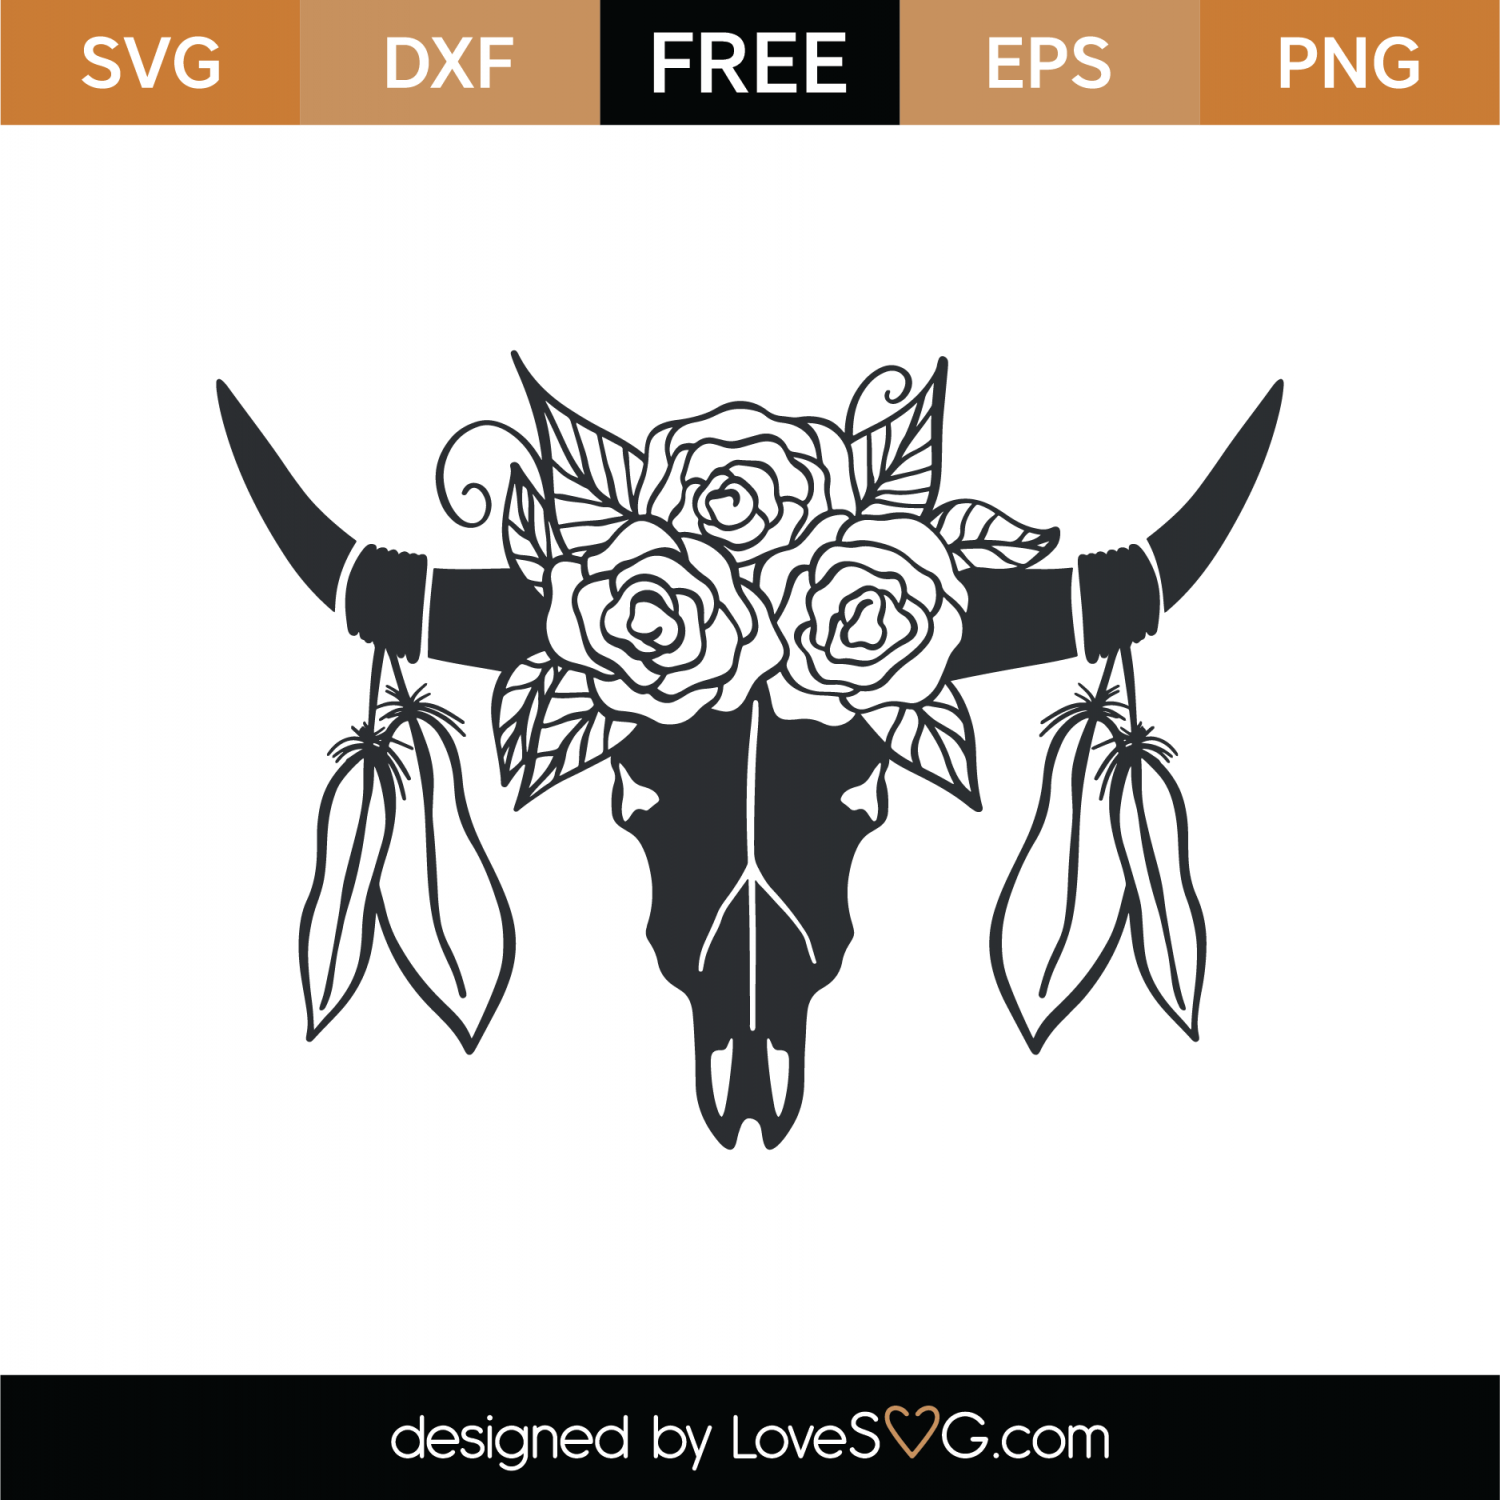 Free Floral Skull Bull SVG Cut File | Lovesvg.com